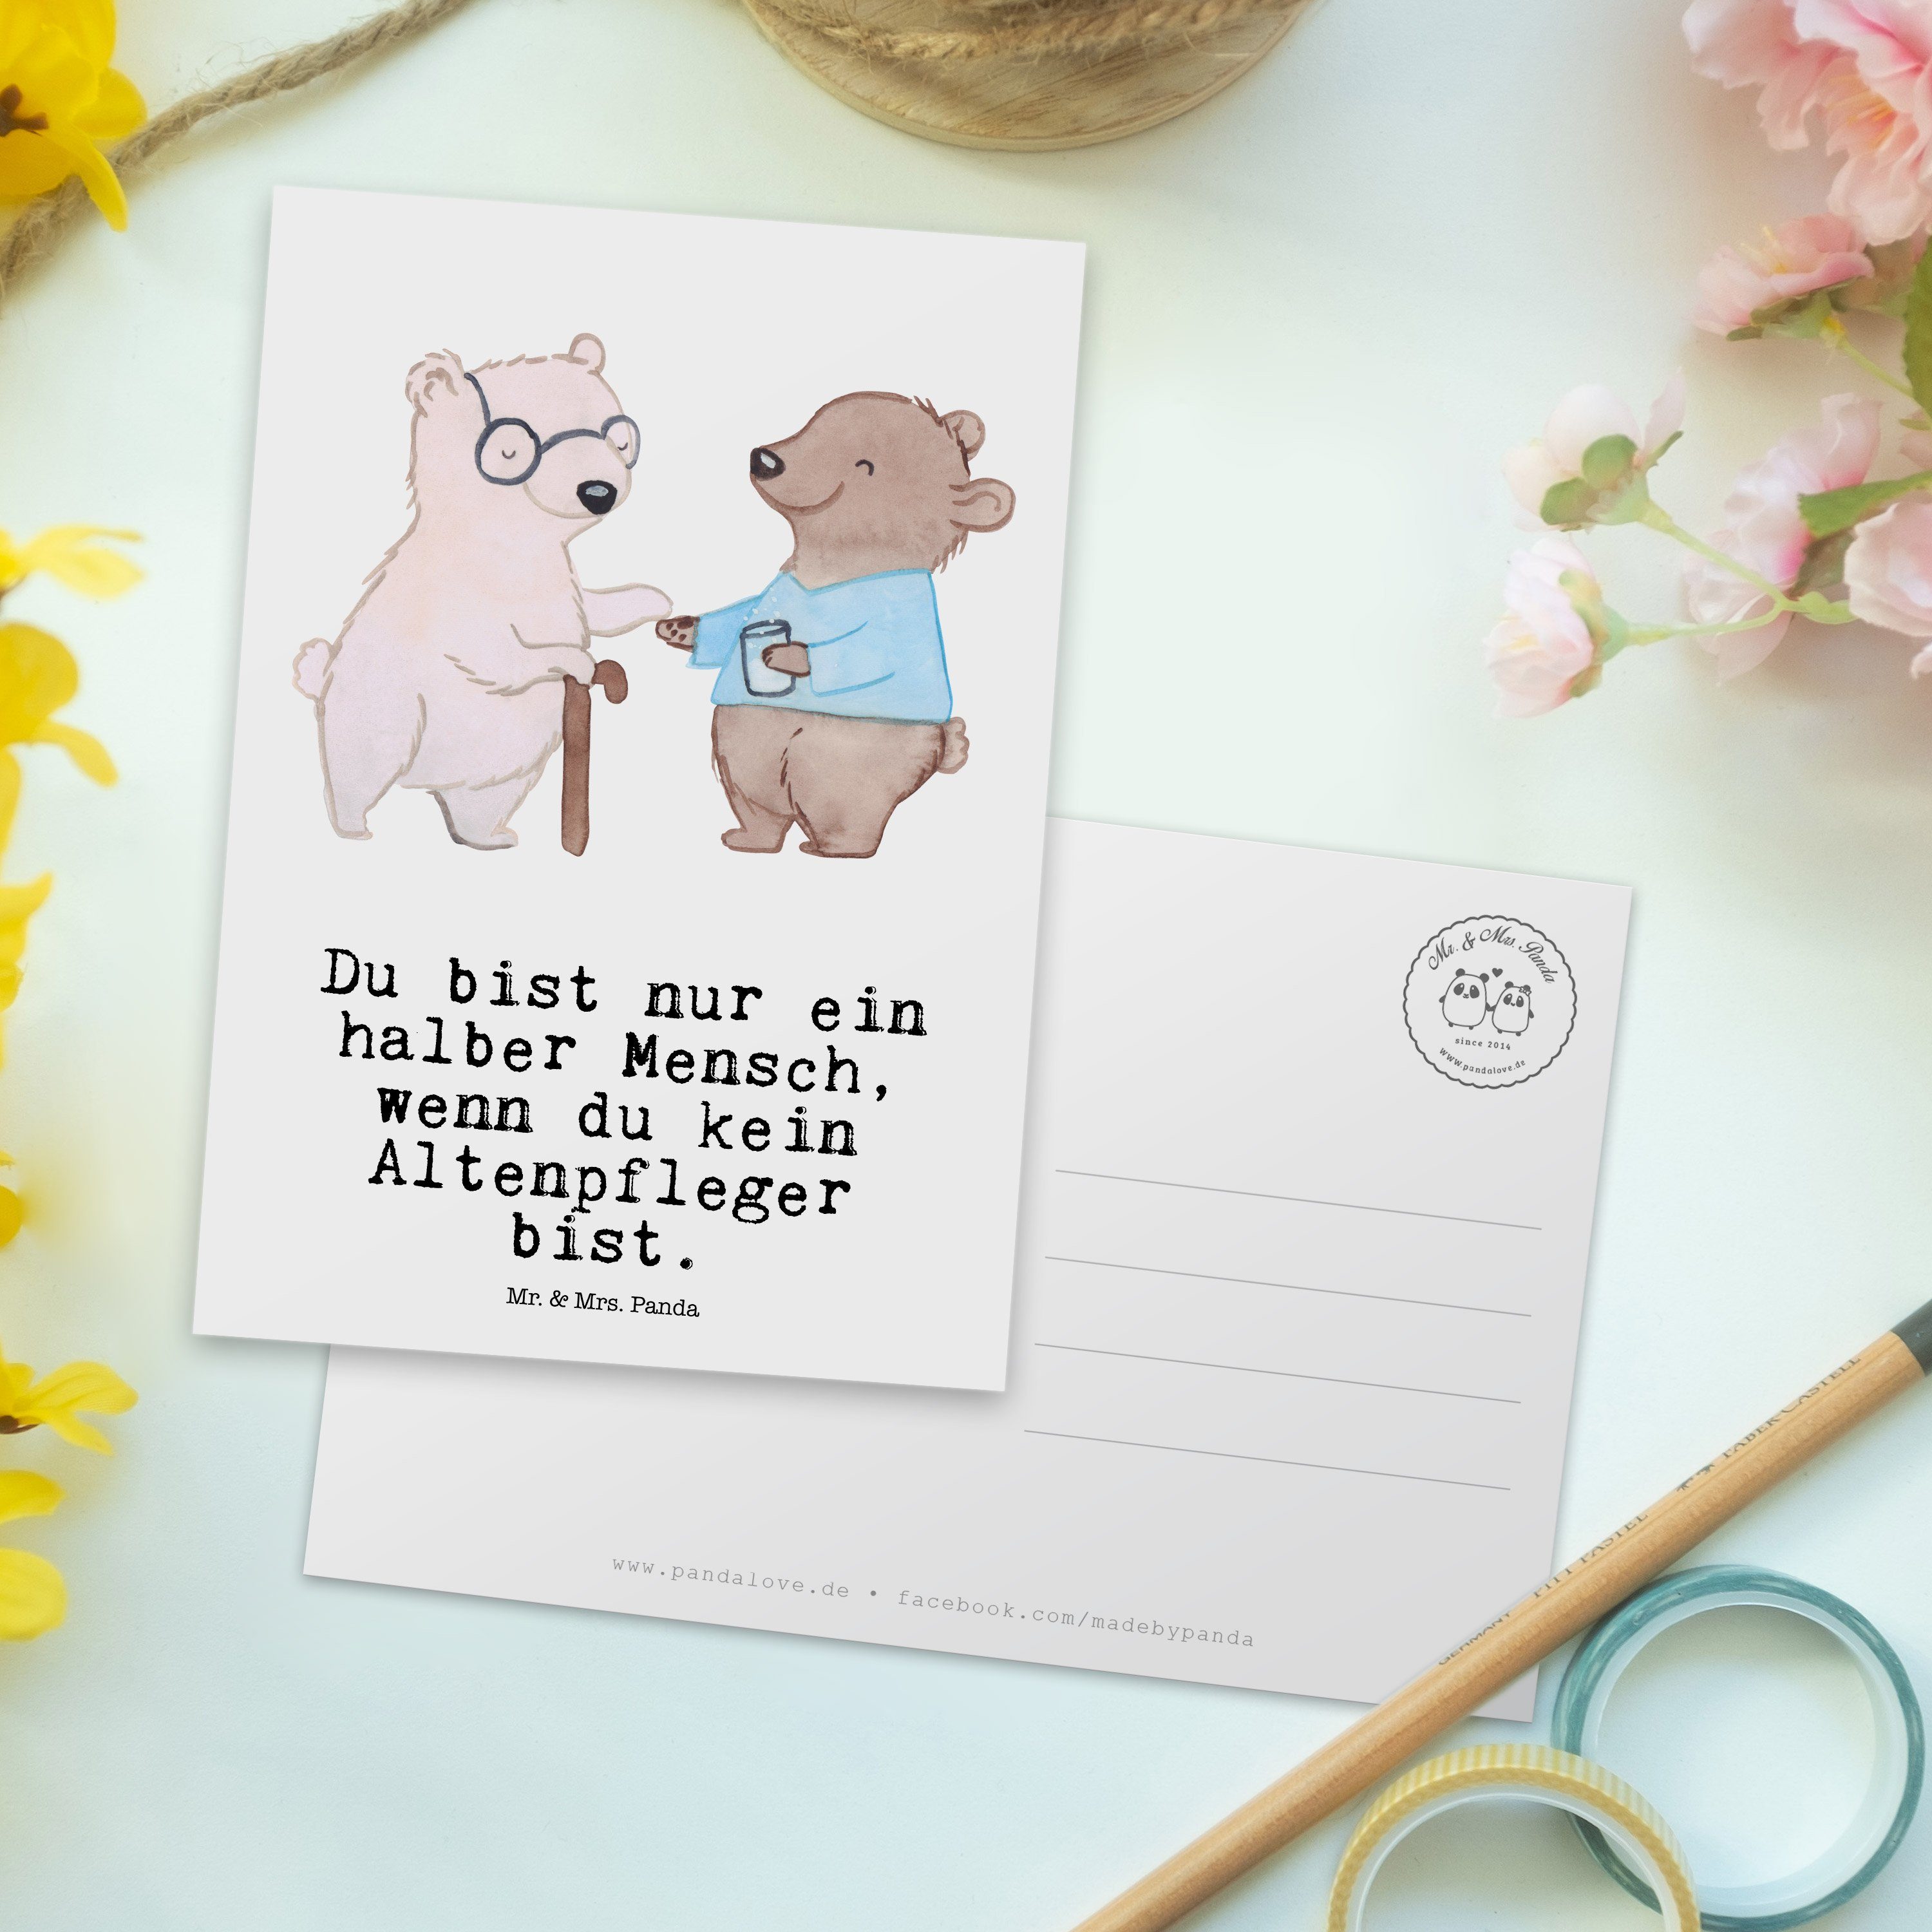 Mr. & Mrs. Panda Weiß Altenheim Er Altenpfleger Geschenk, - Postkarte - Herz Arbeitskollege, mit